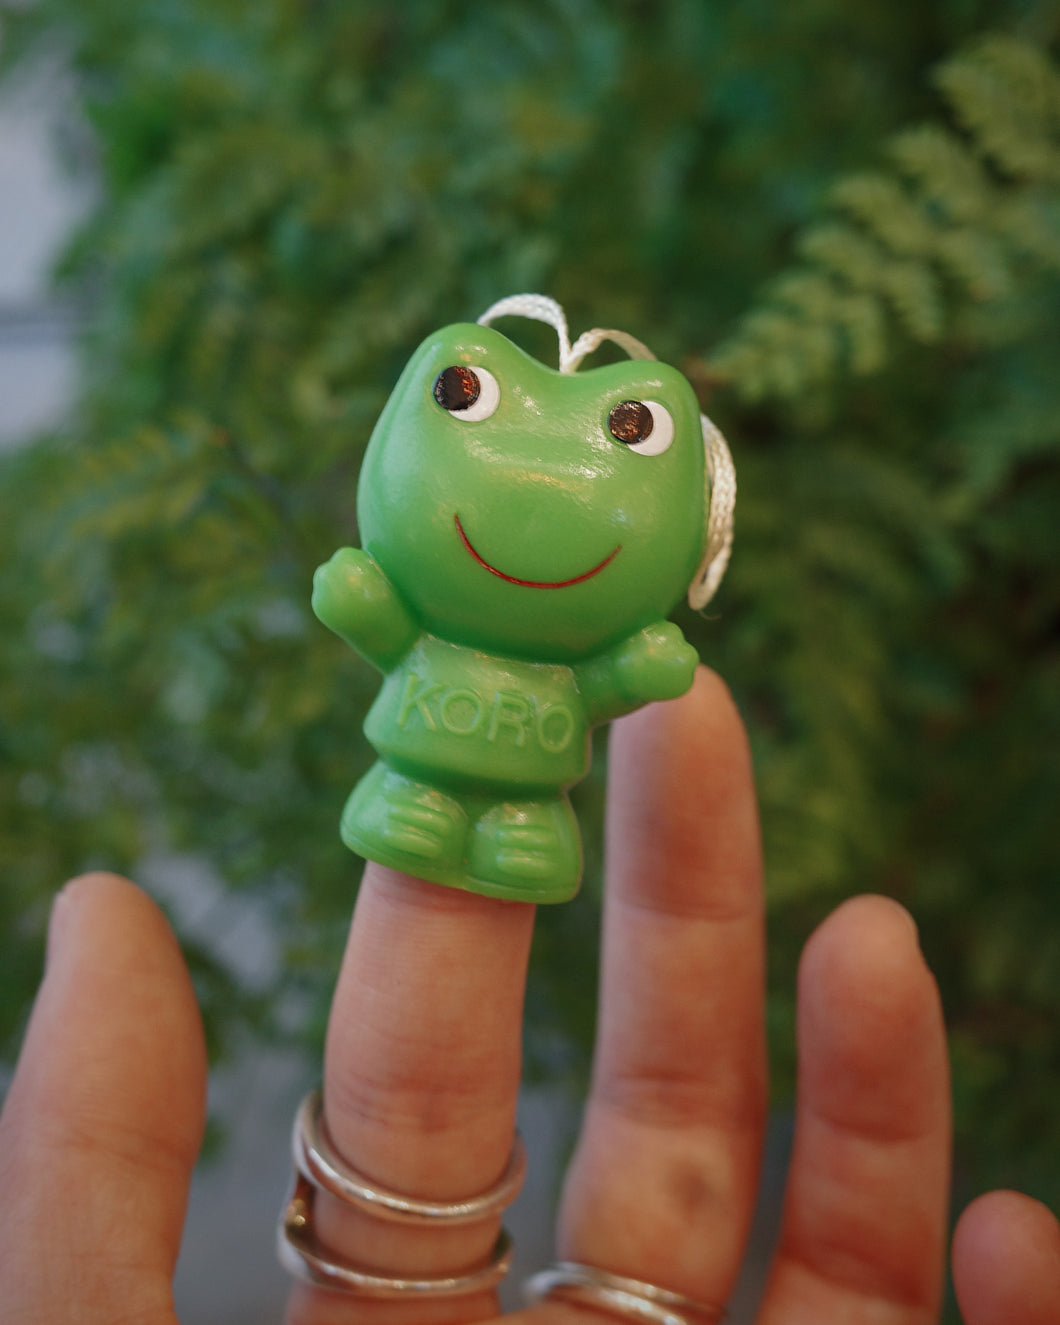 日本製 70s 興和製藥 コロ&ケロ廣告青蛙公仔